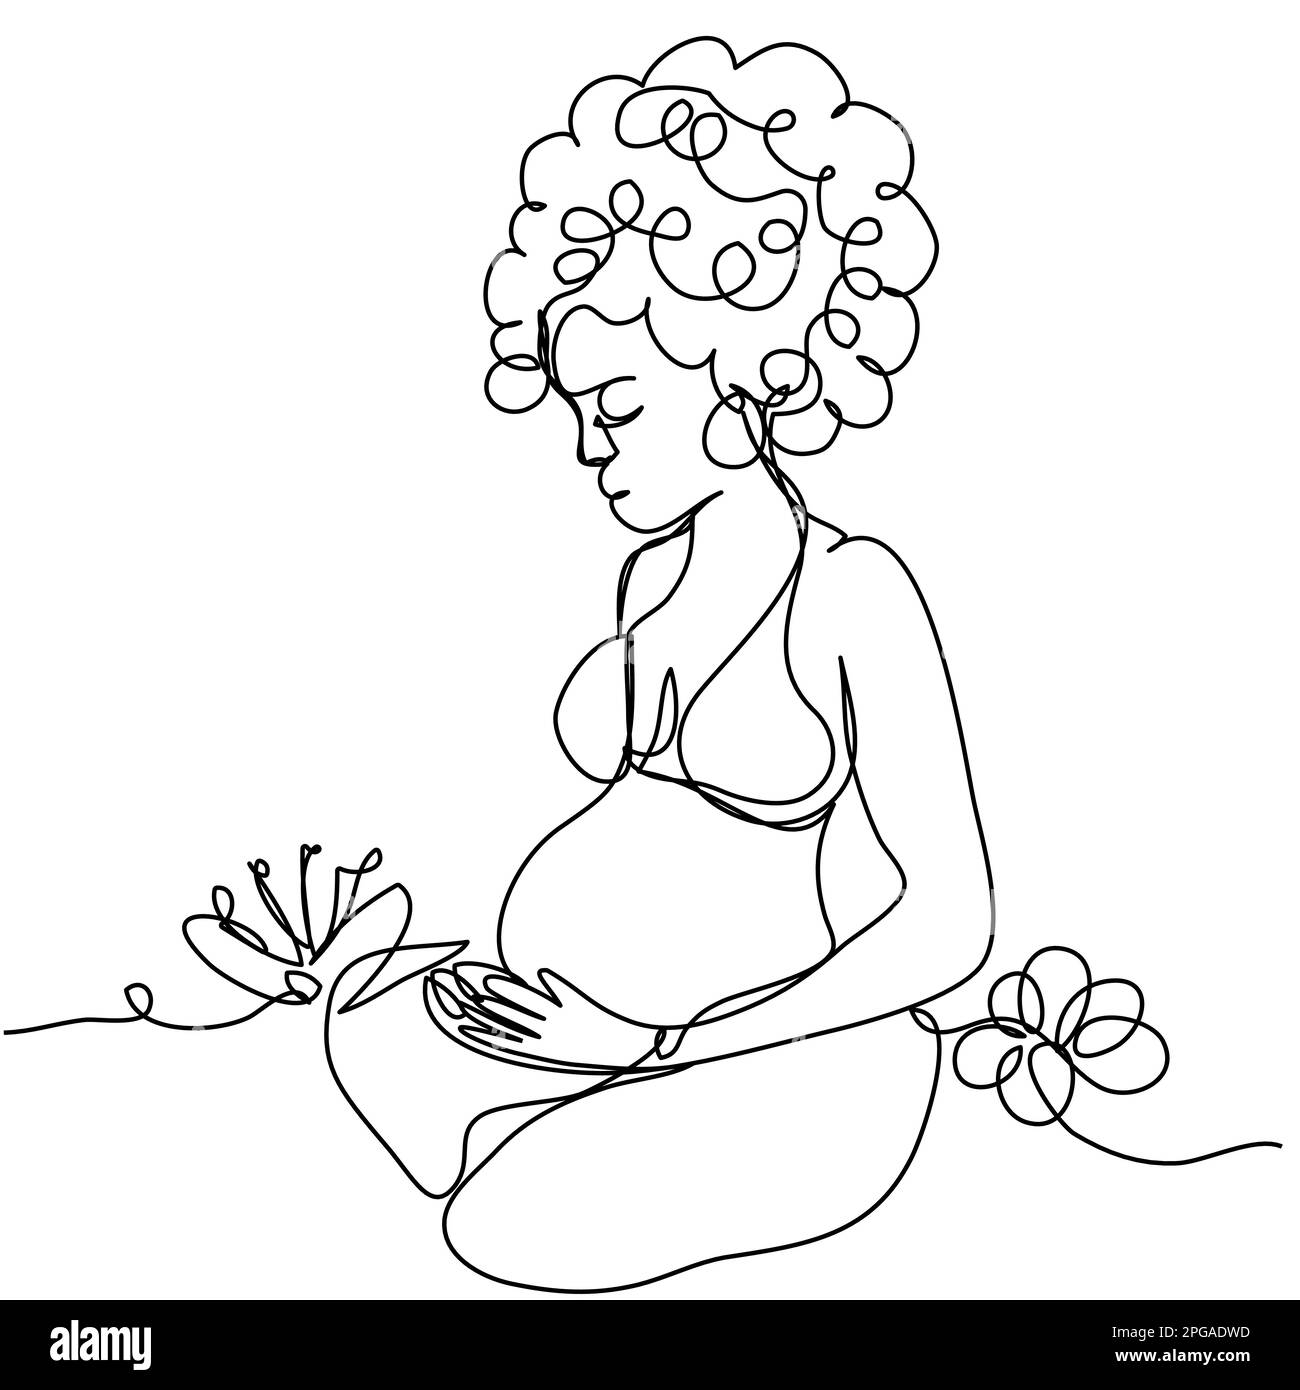 Una ragazza incinta con ricci siede in una posizione del loto in una linea su uno sfondo bianco. Il concetto di godimento, calma, attesa di un bambino. A w Illustrazione Vettoriale